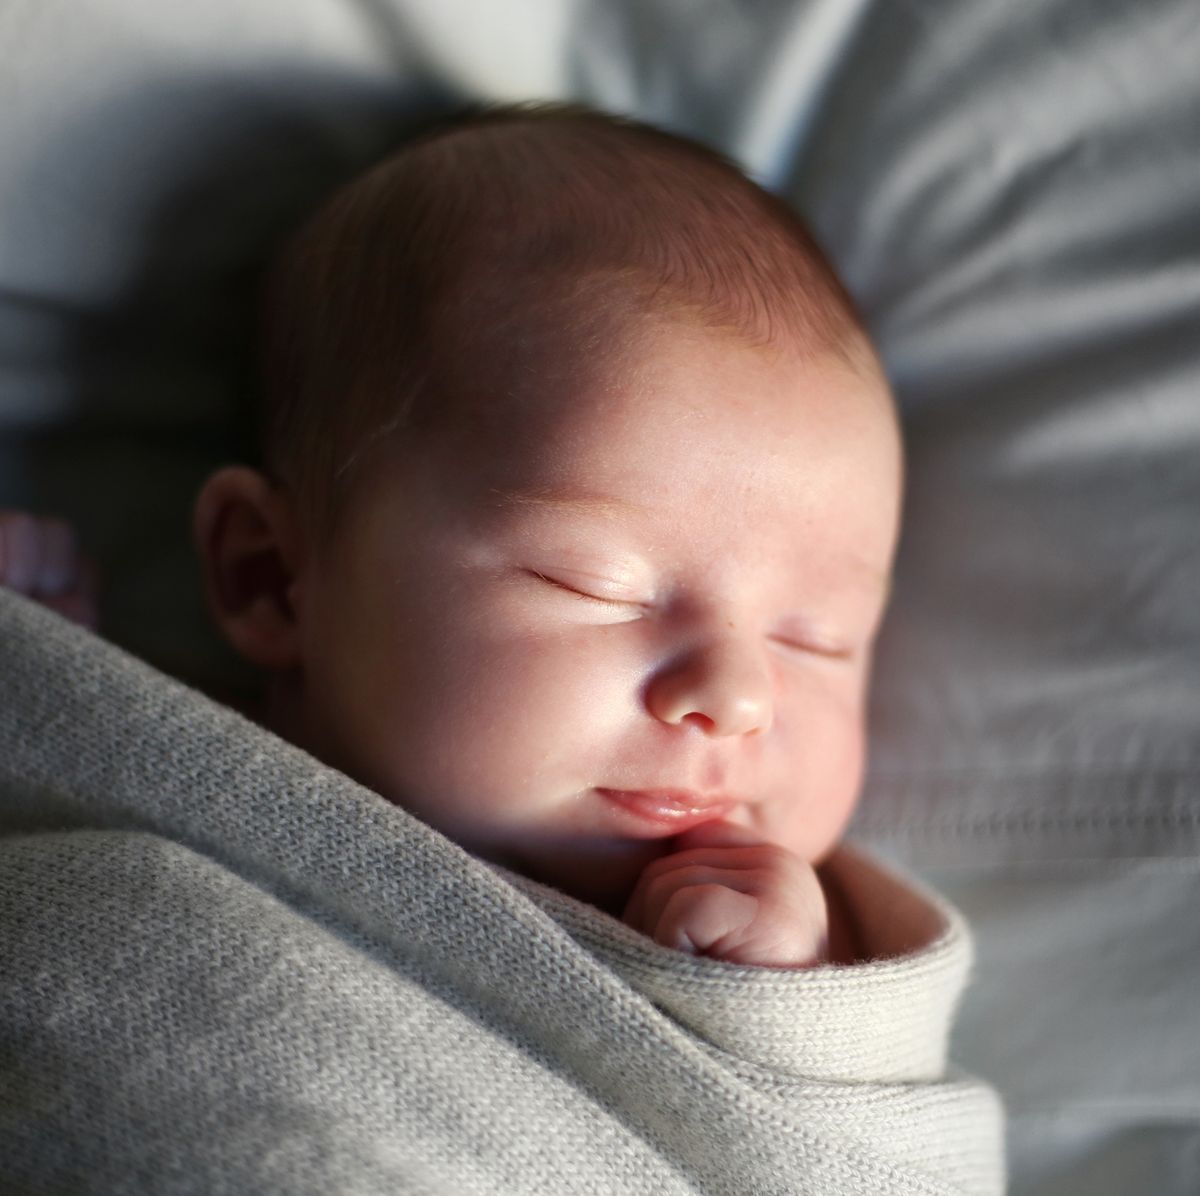 El sueño en los recién nacidos y lactantes - Tu Pediatra